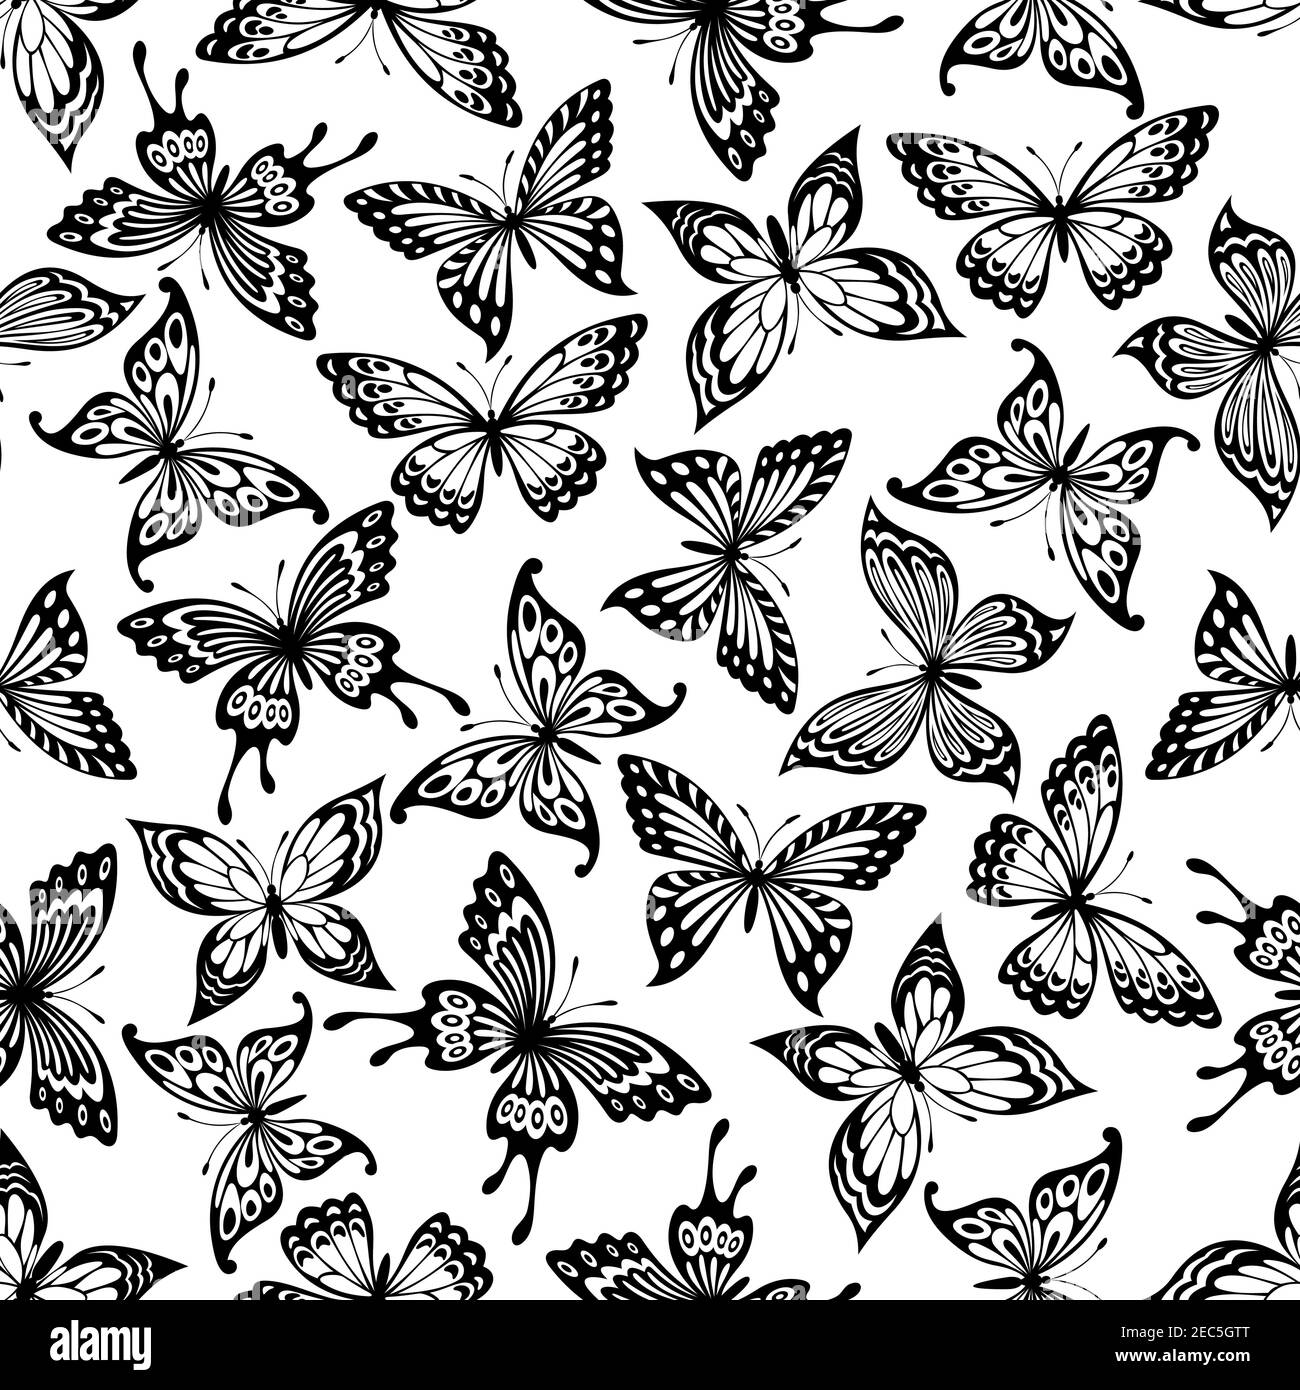 Schmetterlinge Nahtloses Muster mit schwarz-weißem Hintergrund von Monarch, Schwalbenschwanz und buckeye Schmetterlinge mit ornamentalen offenen Flügeln. Natur-Koncep Stock Vektor